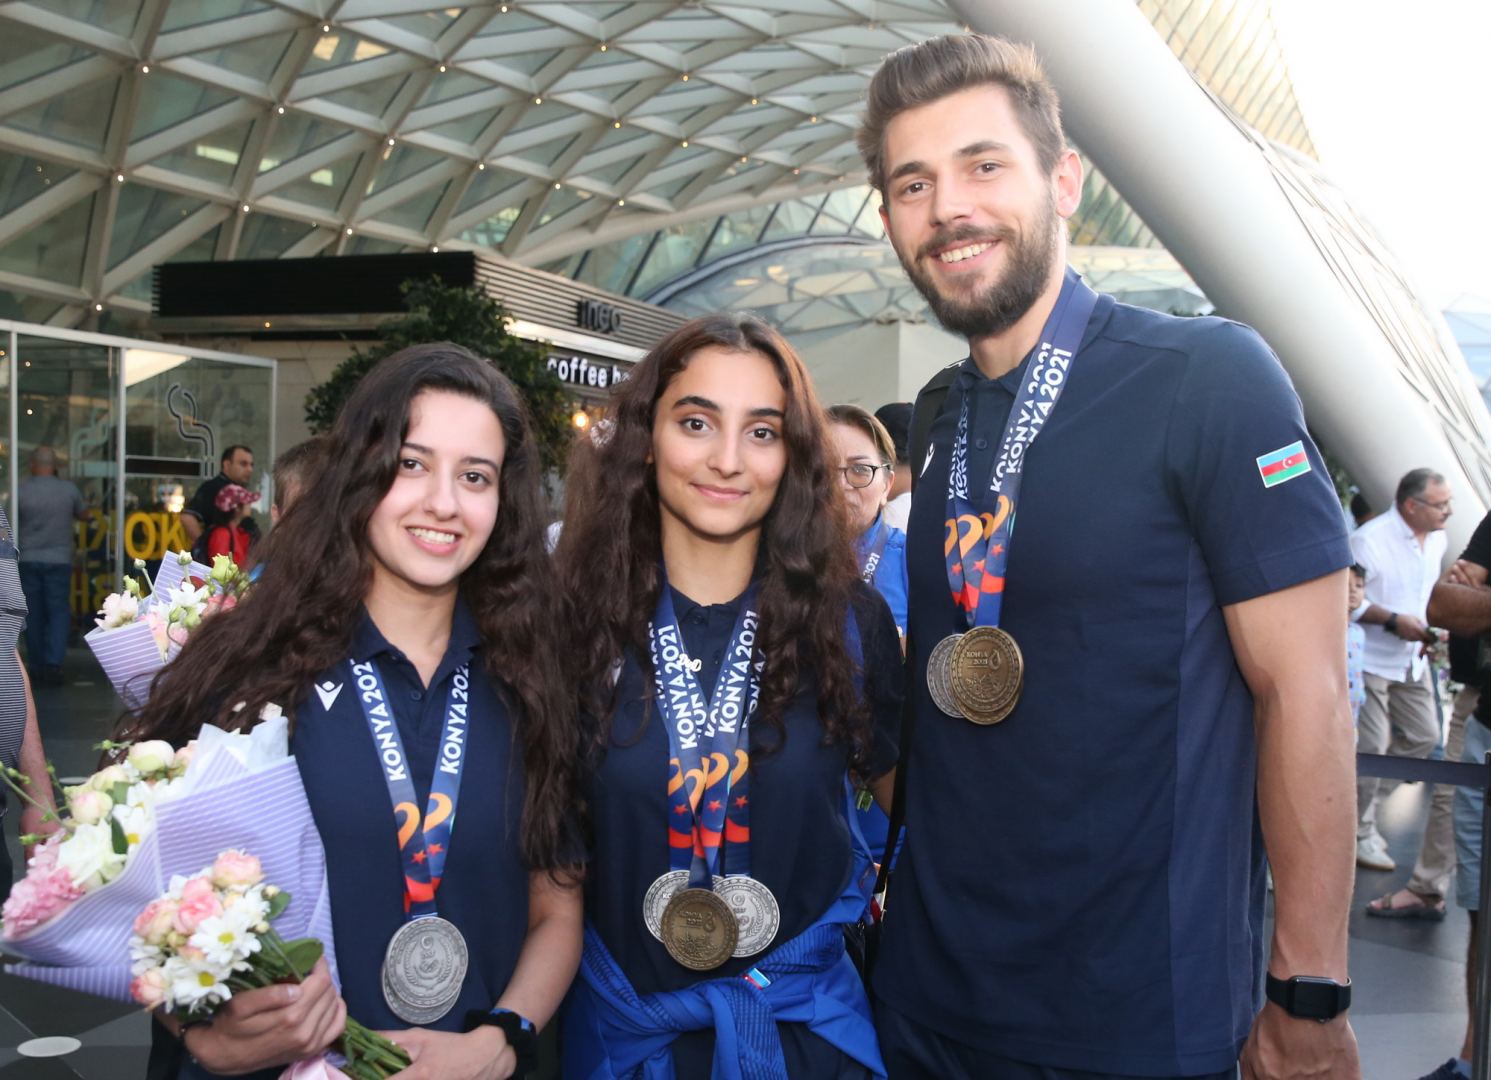 Азербайджанские гимнасты–медалисты Исламиады вернулись с наградами на родину (ФОТО)